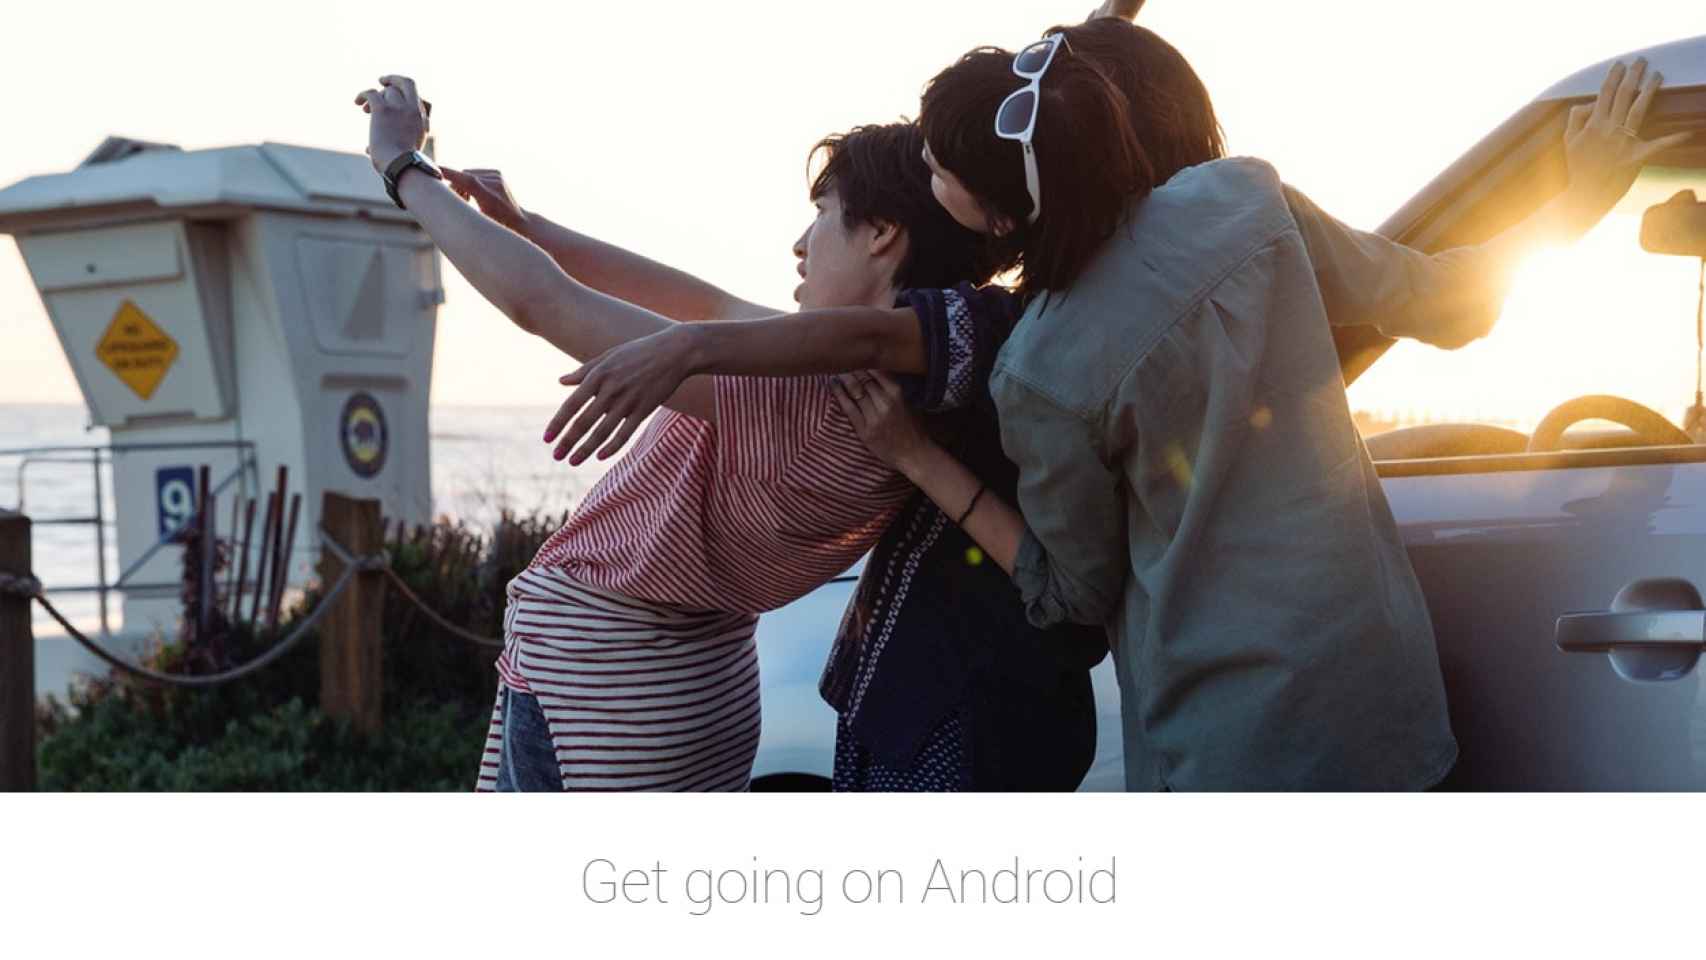 Google publica la guía oficial para pasar de iOS a Android